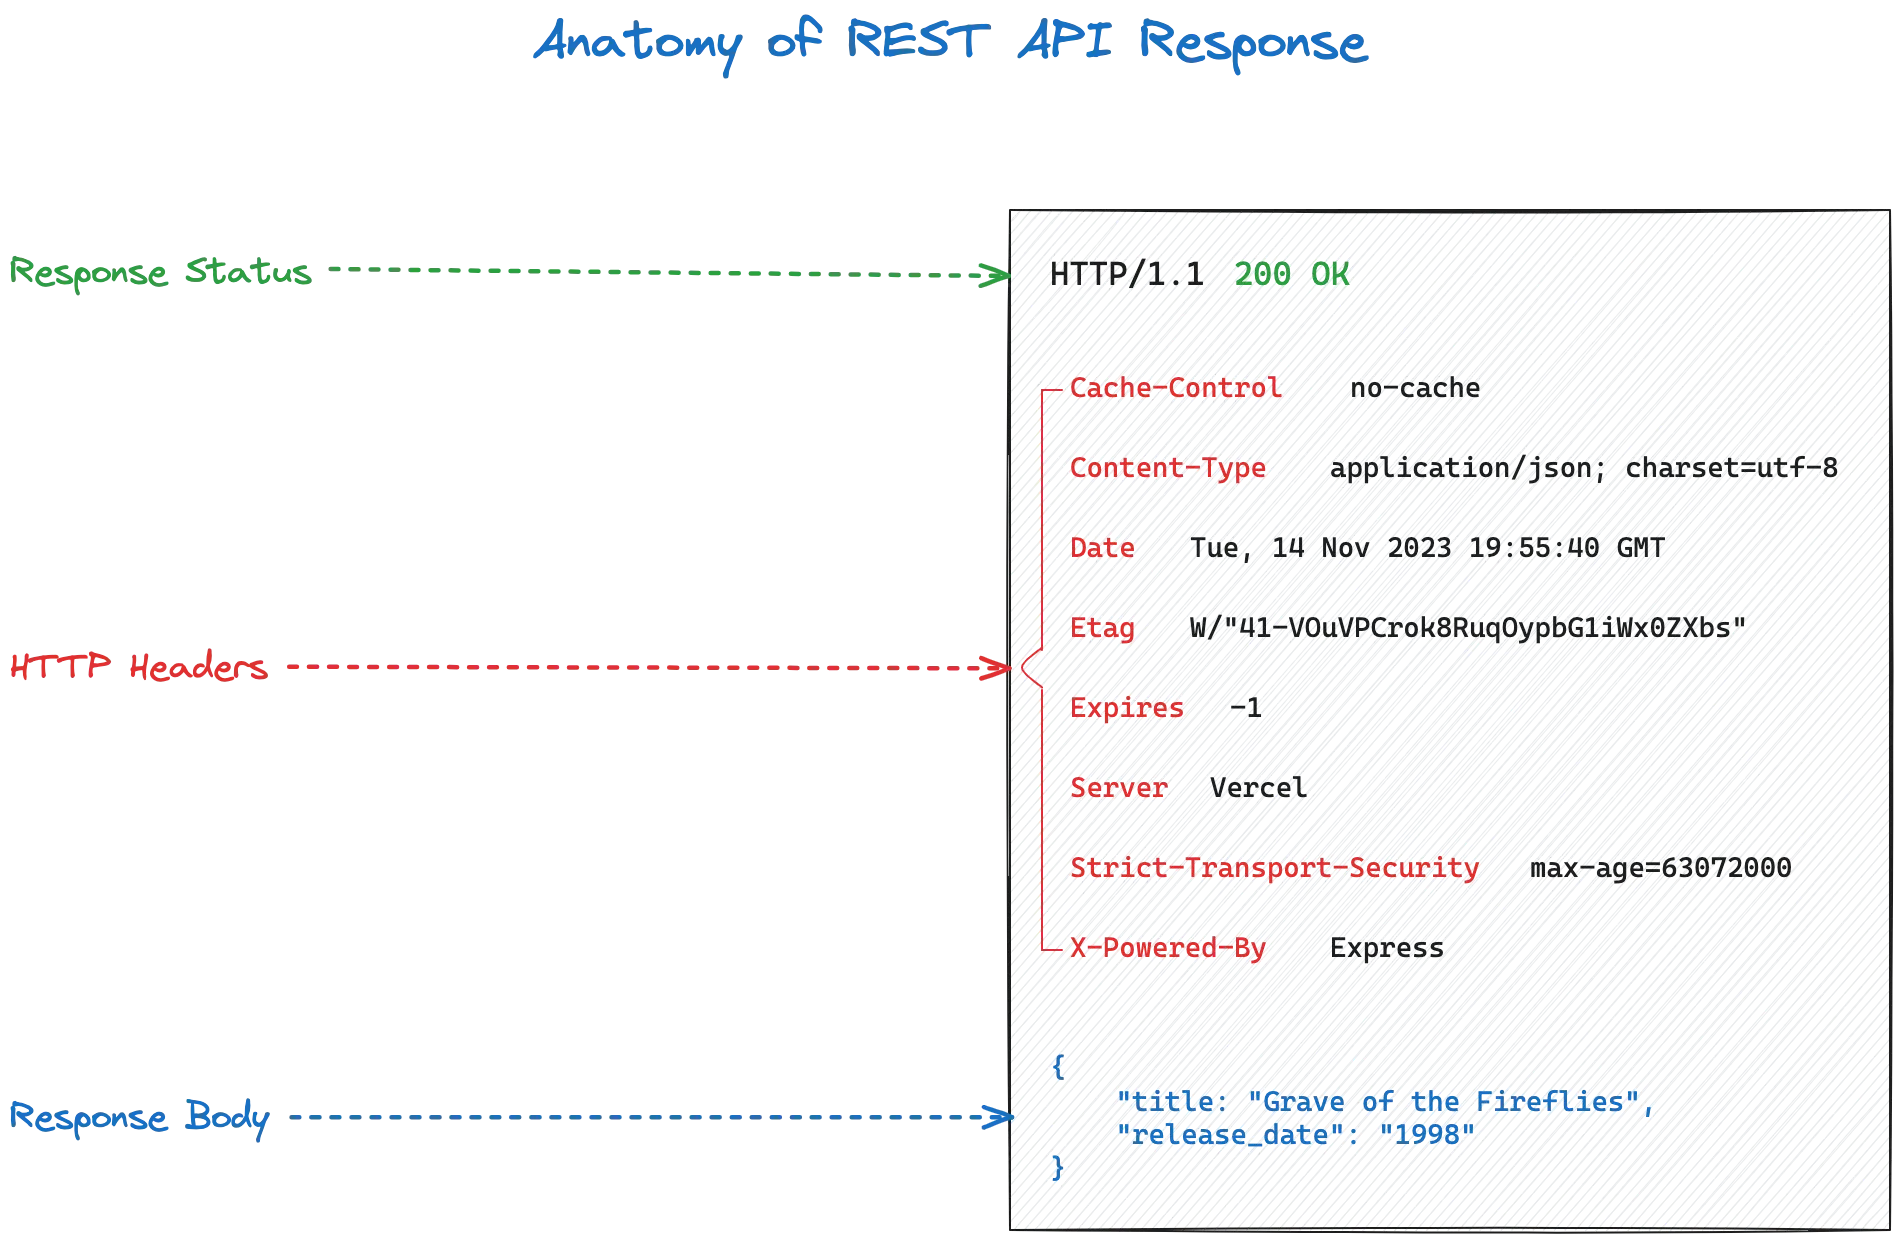 Anatomy of REST API Response